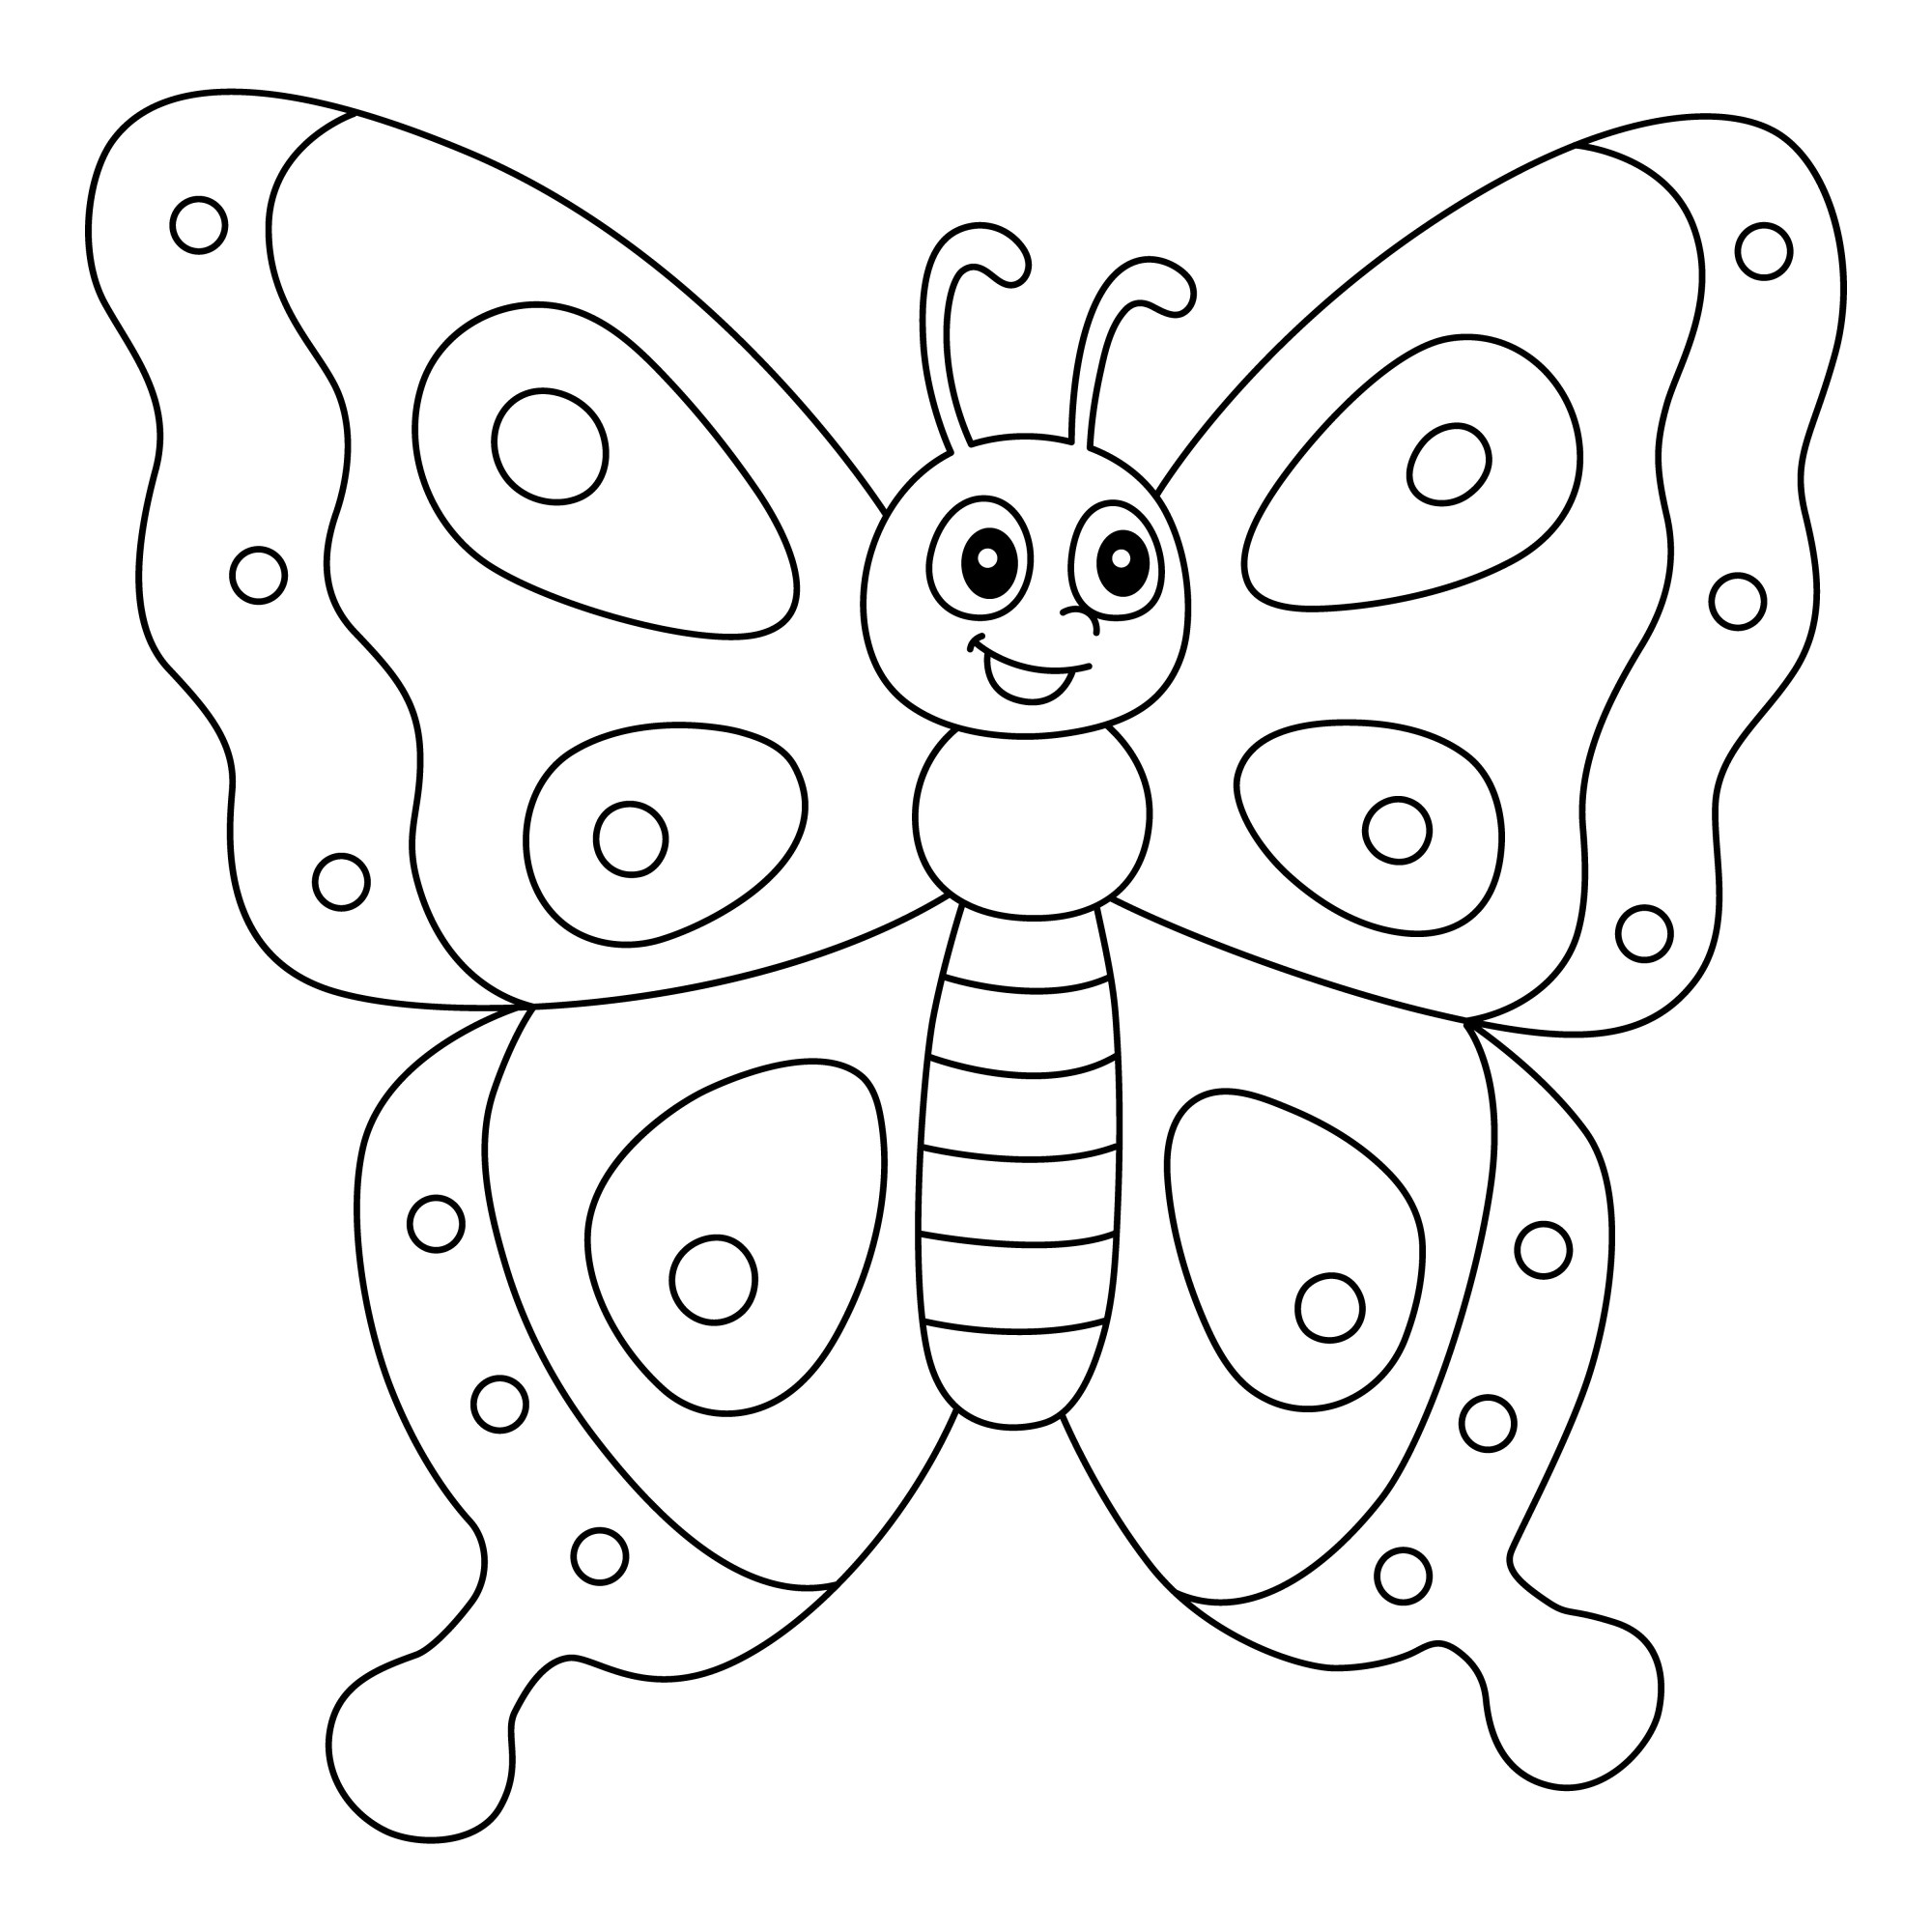 Раскраска для детей: сказочная бабочка с большими глазами